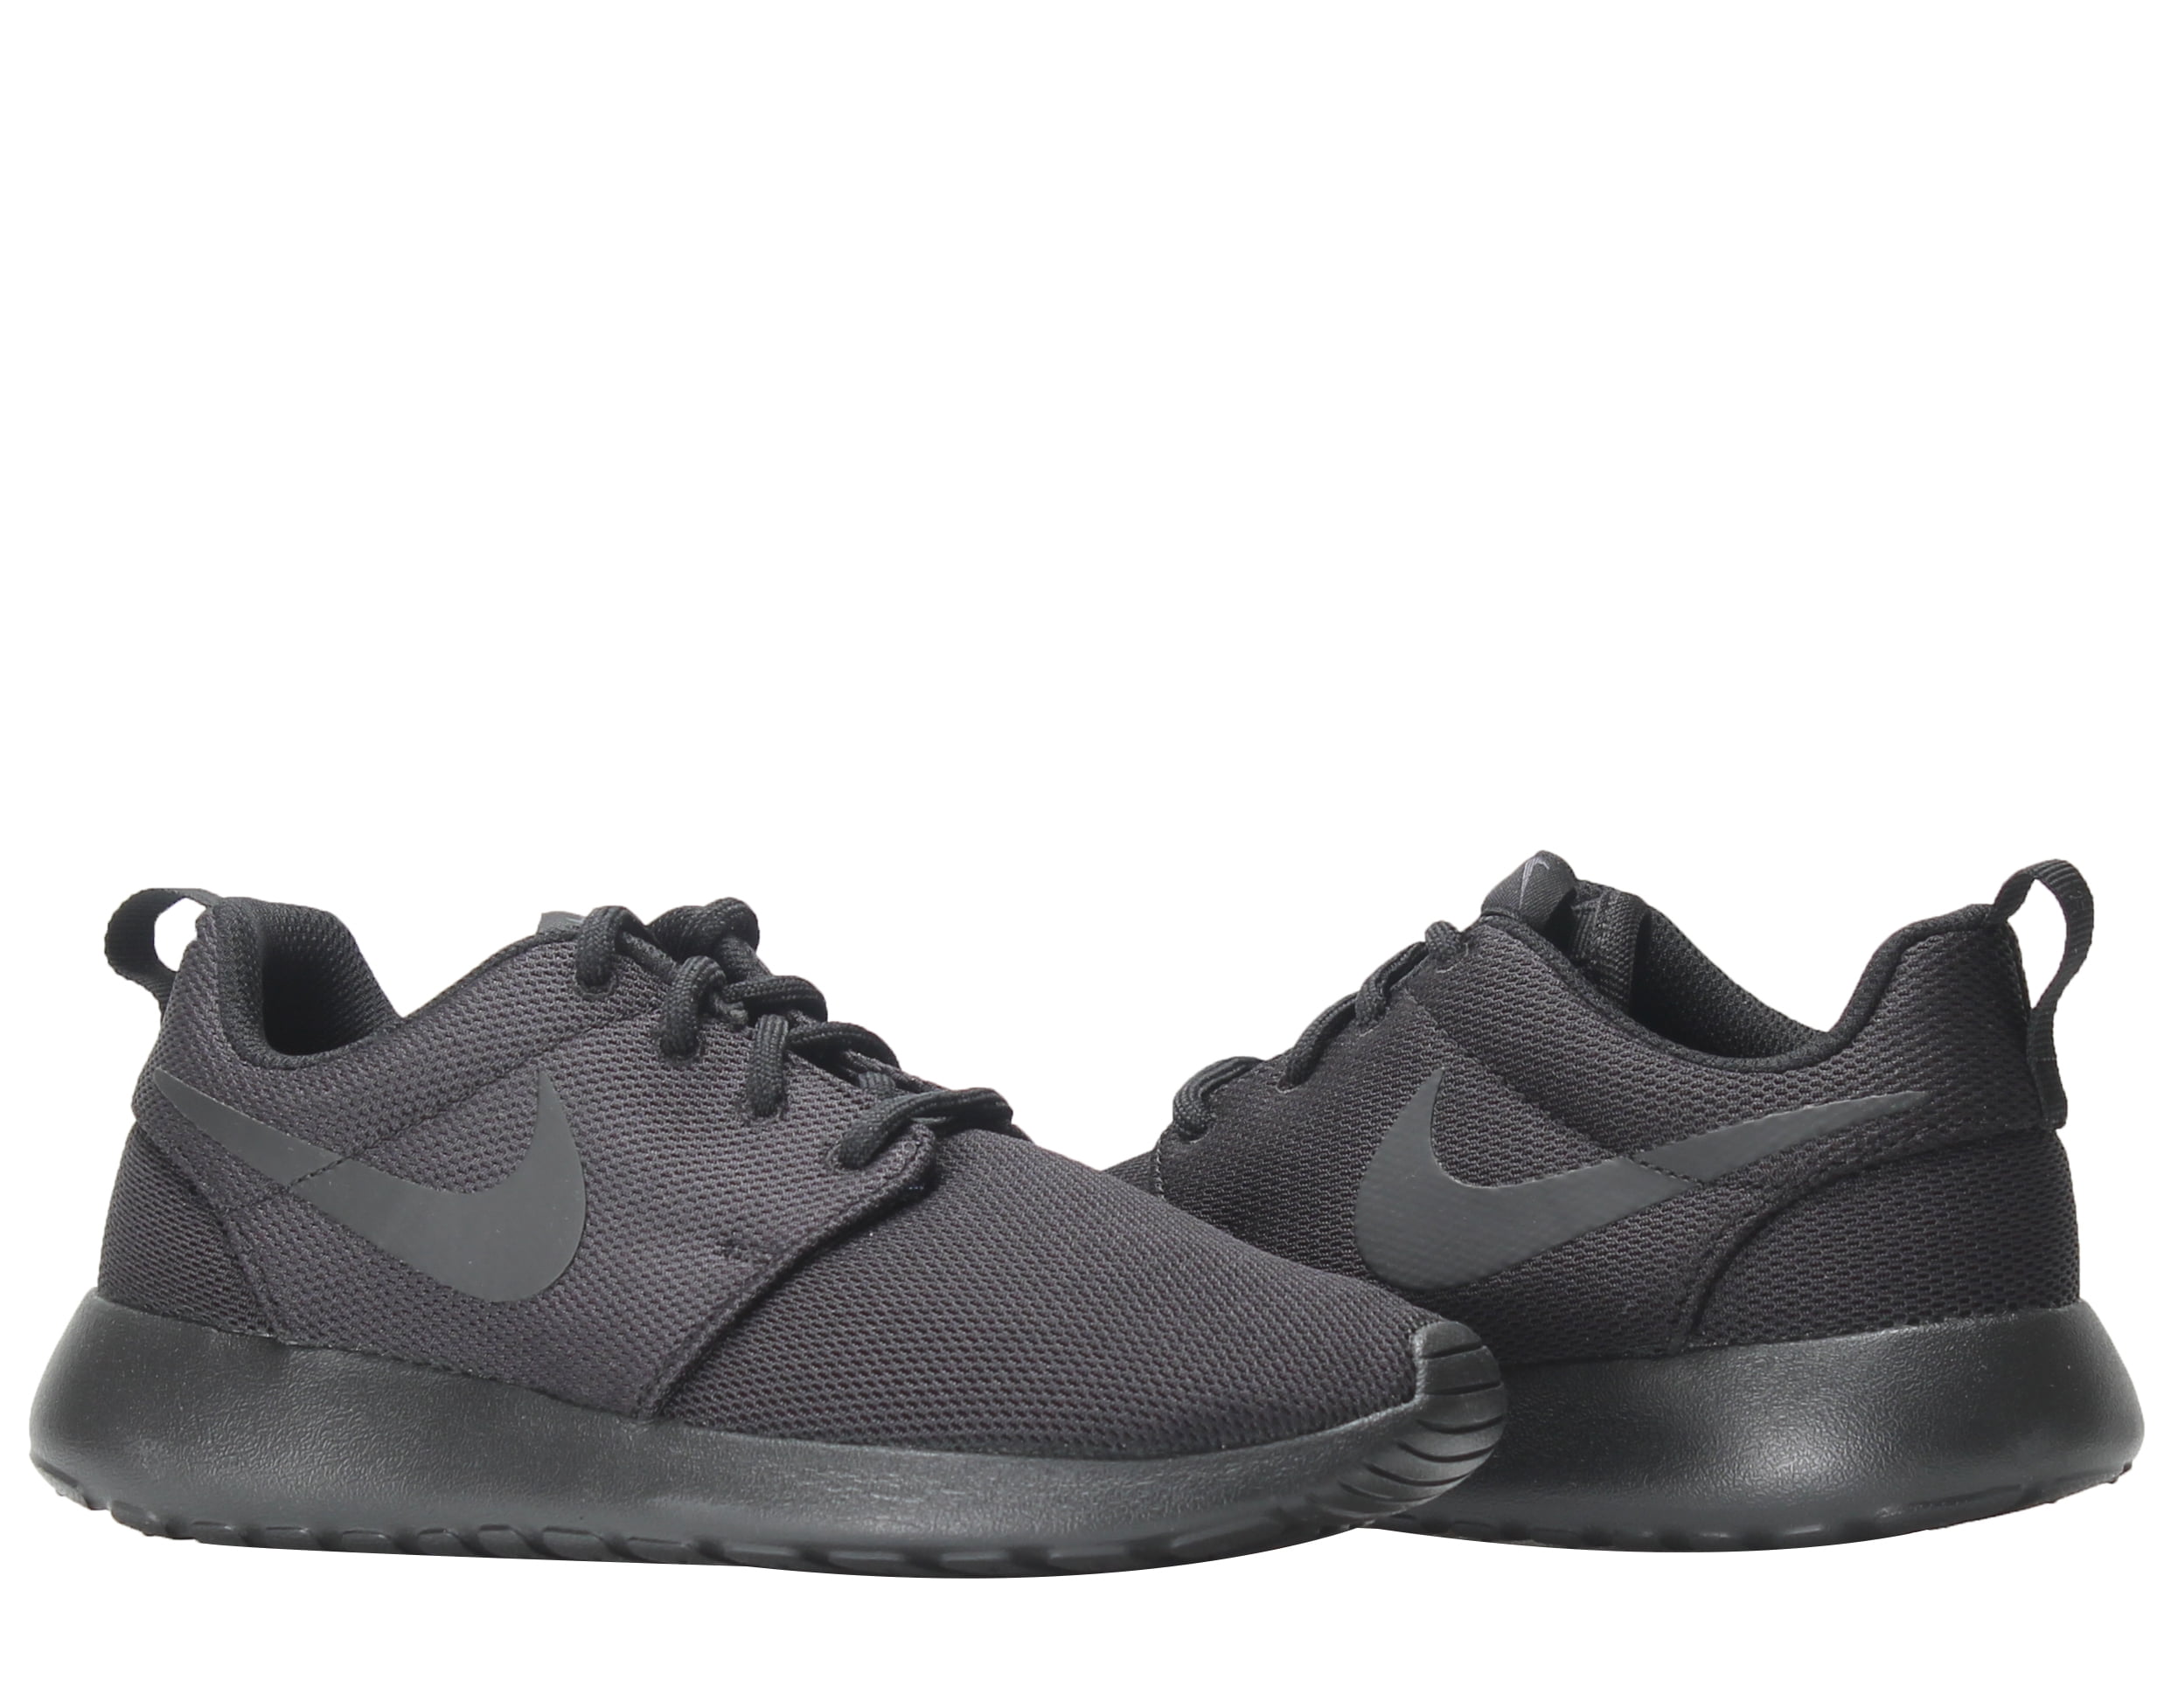 Nike 844994-001: Womens Roshe One running shoe (7.5 B(M) US - Walmart.com